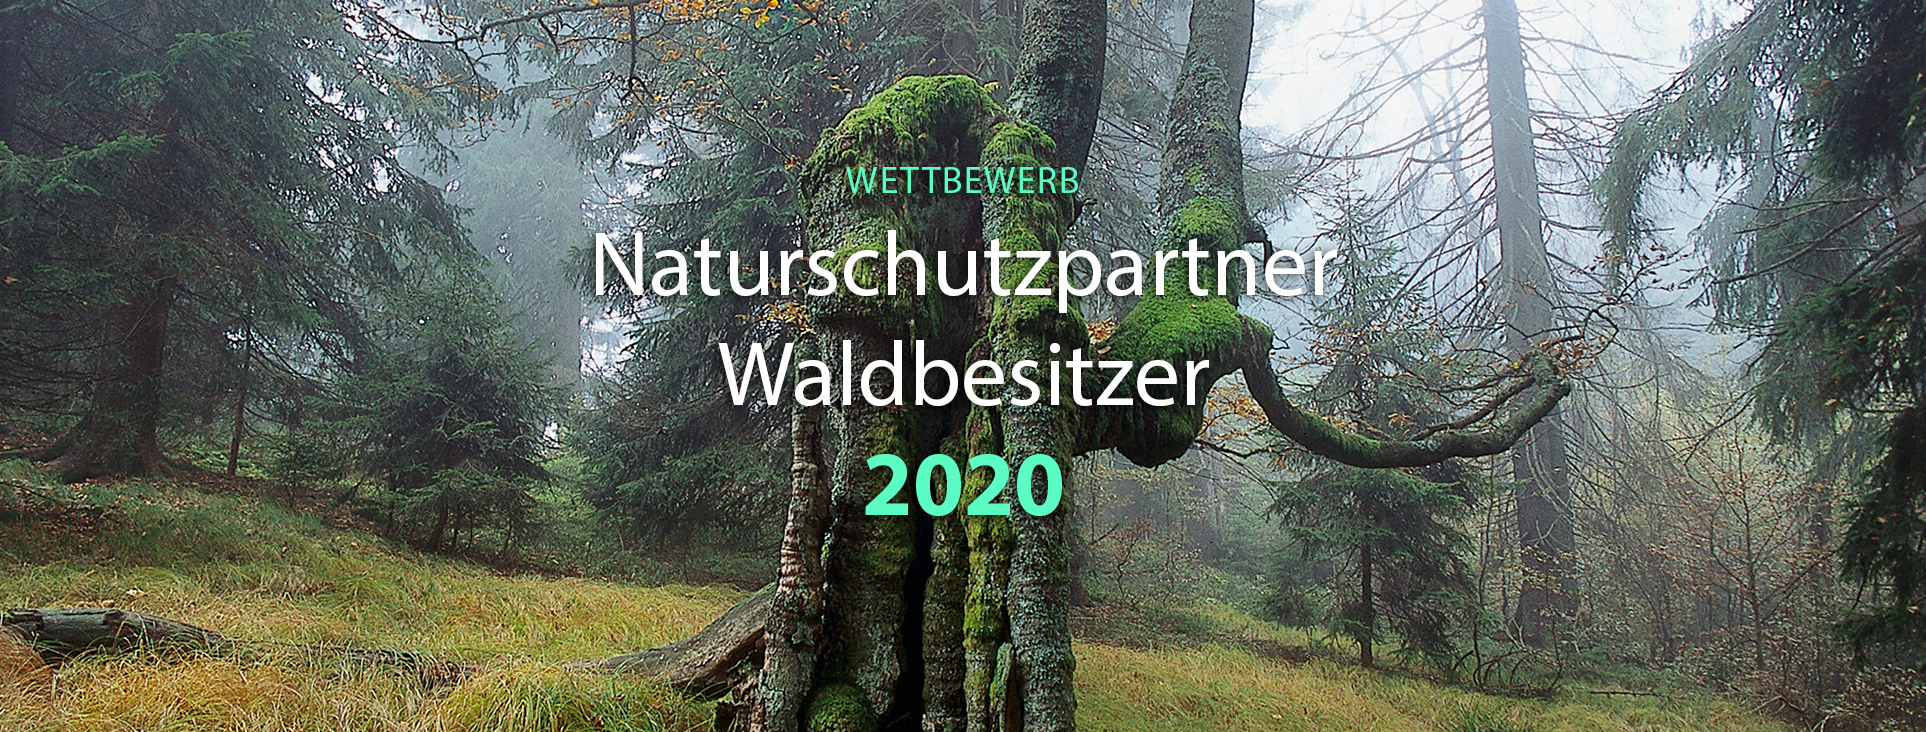 Titelbild des Wettbewerbes Naturschutzpartner Waldbesitzer 2020.